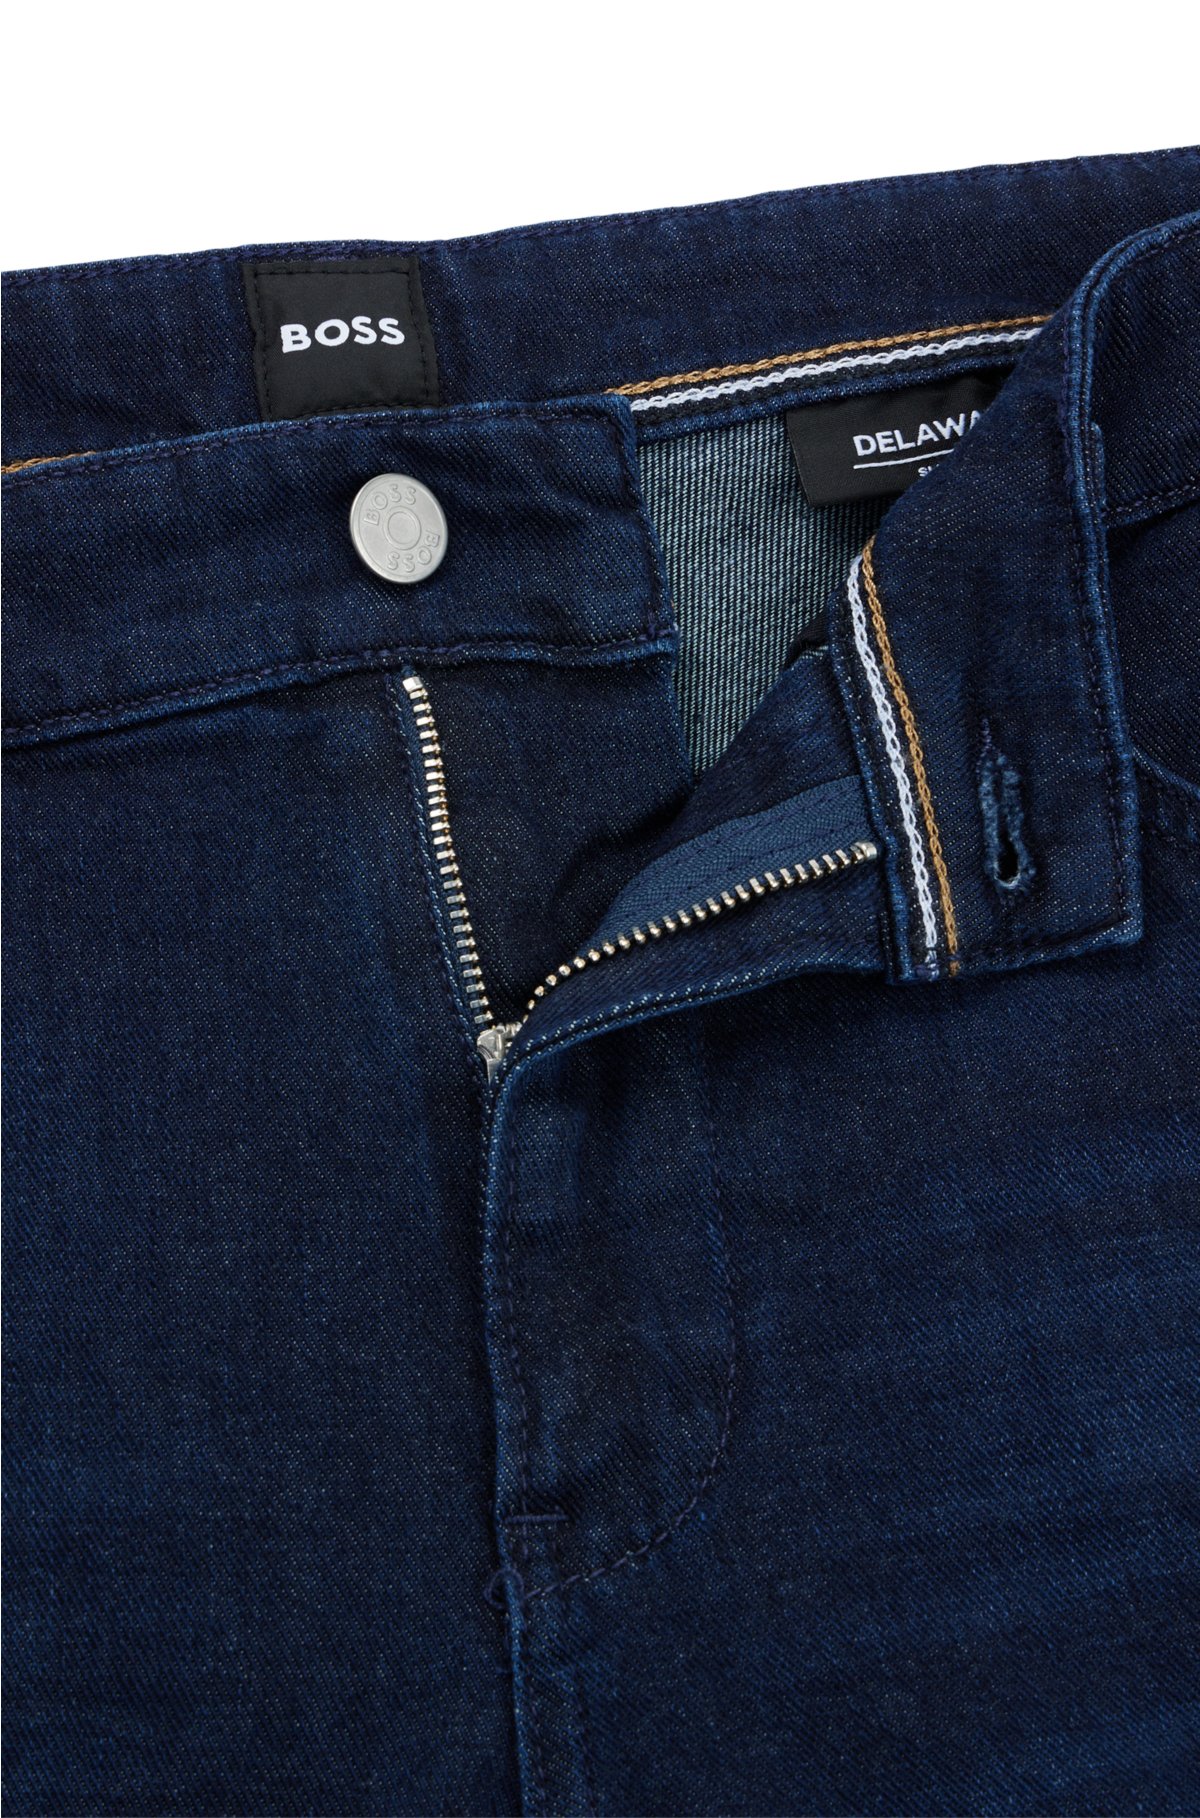 BOSS - Slim-fit jeans in blue super-soft denim